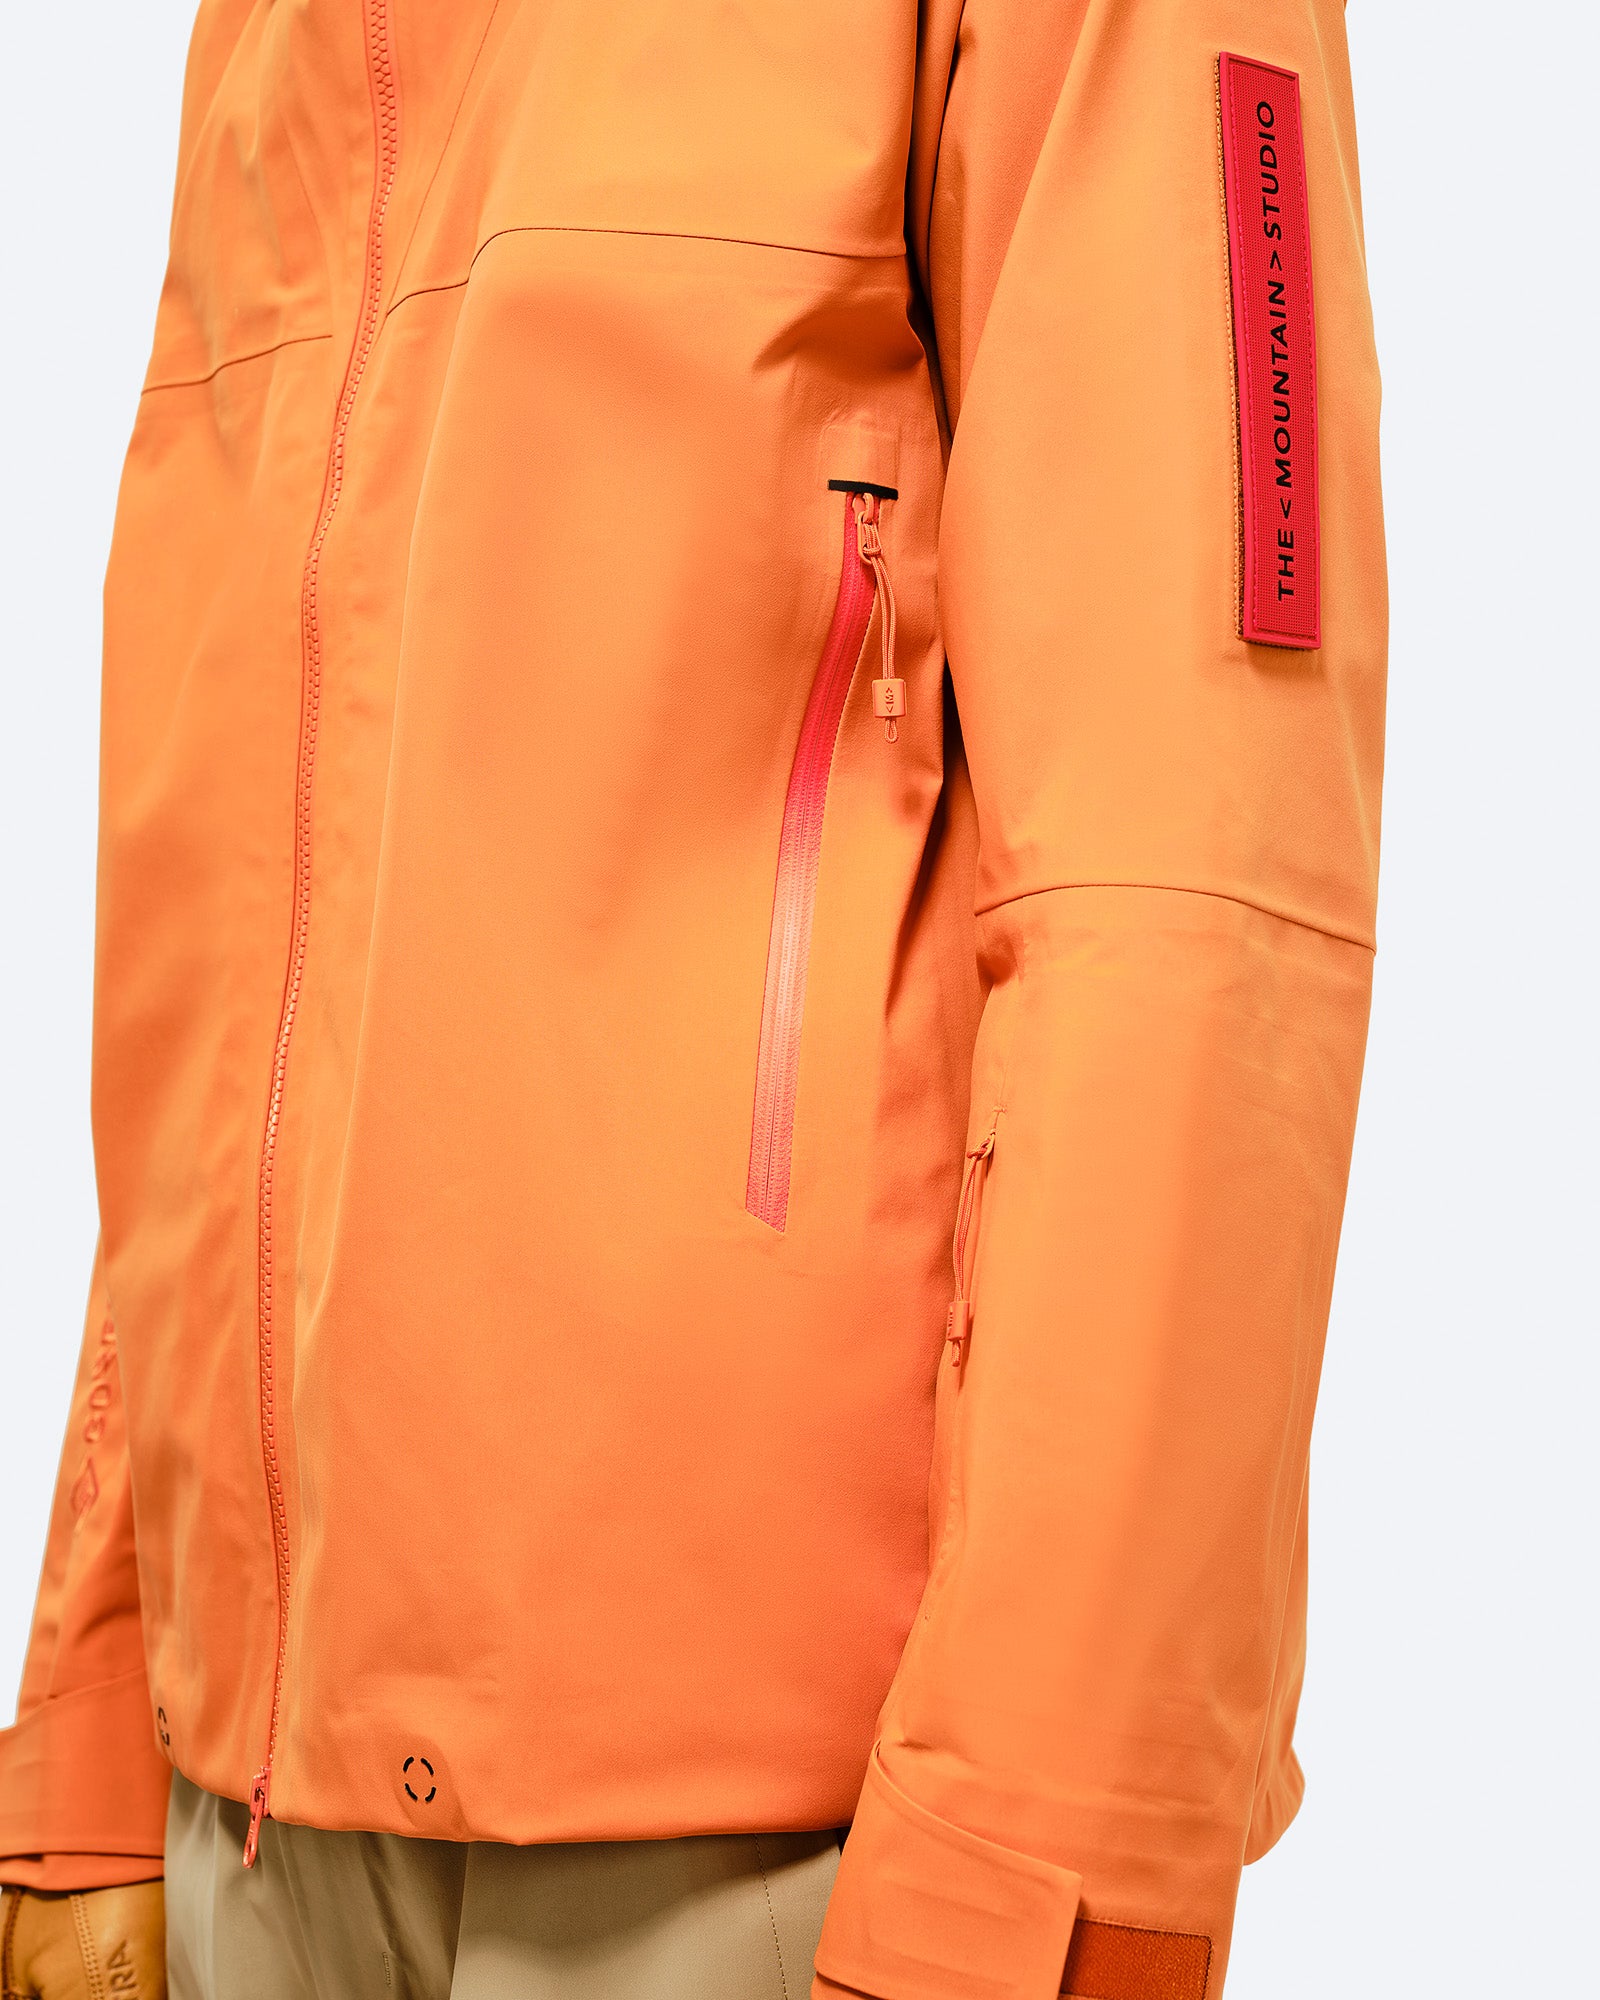 2 Fronttaschen,
Skipasstasche am Ärmel,
Abnehmbarer vertikaler Logopatch, YKK Aquaguard Reißverschlüsse
2-Wege-Frontreißverschluss. card image